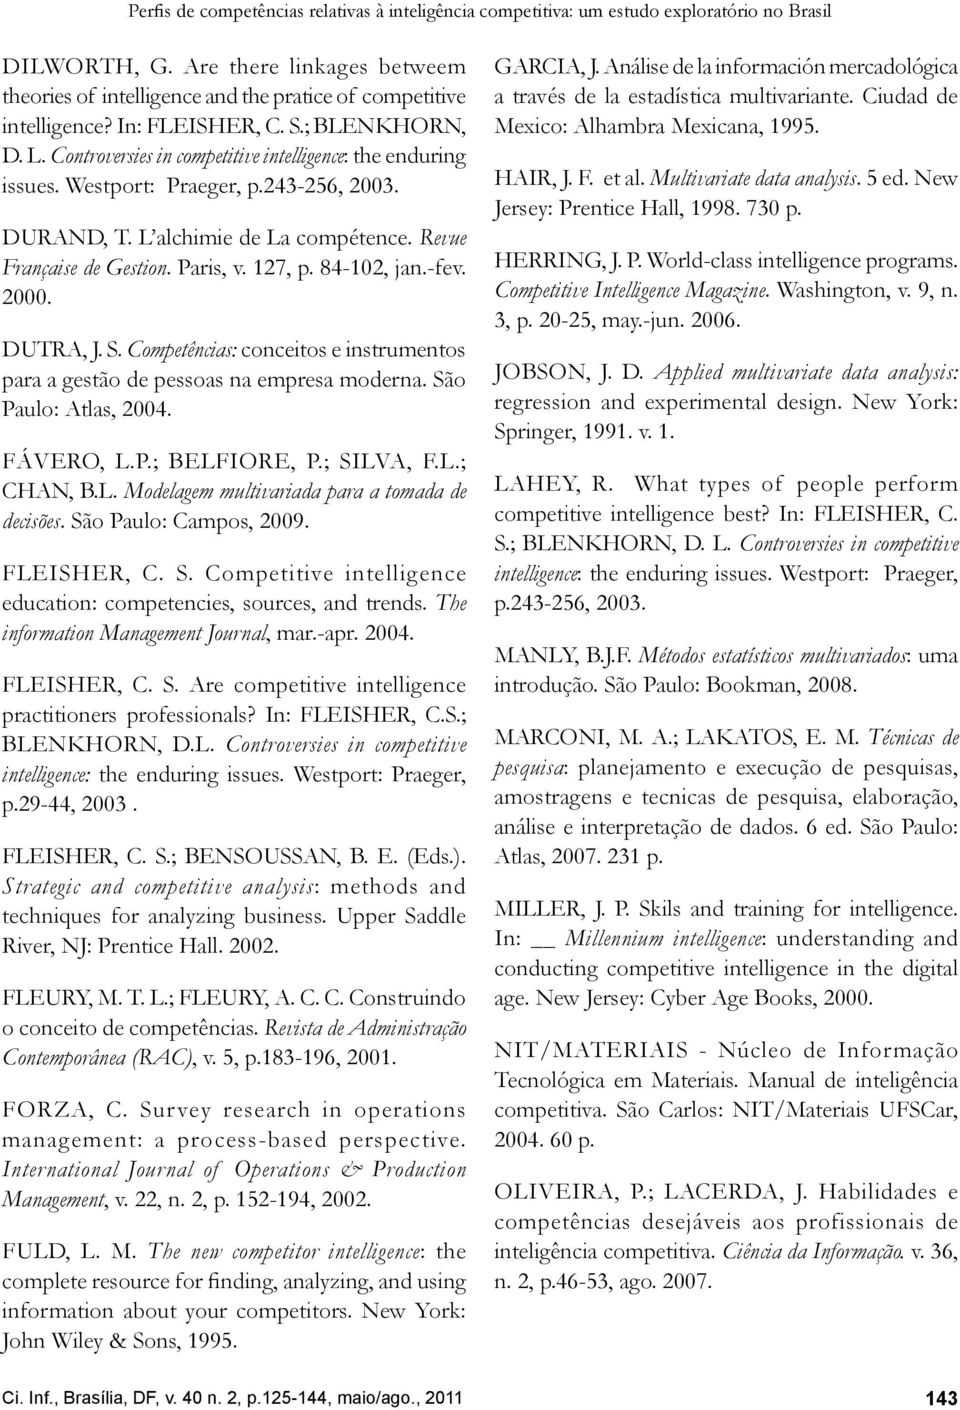 Westport: Praeger, p.243-256, 2003. DURAND, T. L alchimie de La compétence. Revue Française de Gestion. Paris, v. 127, p. 84-102, jan.-fev. 2000. DUTRA, J. S.